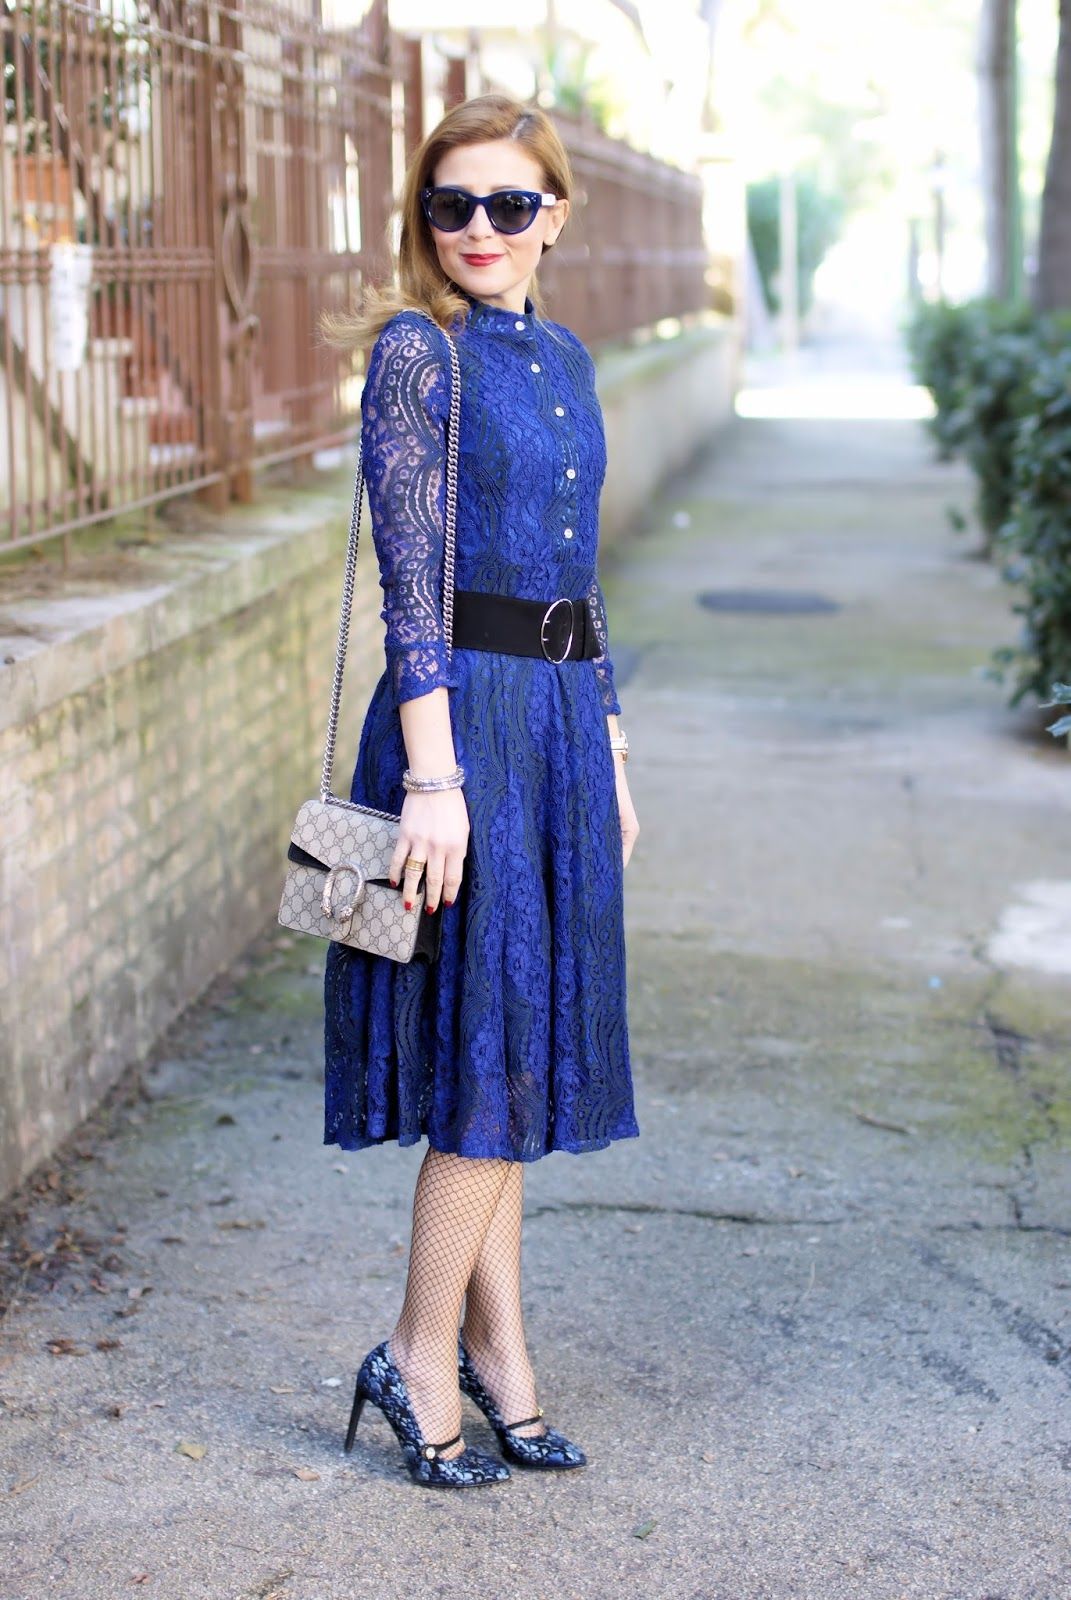 Blue Lace Dress Outfit Ideas